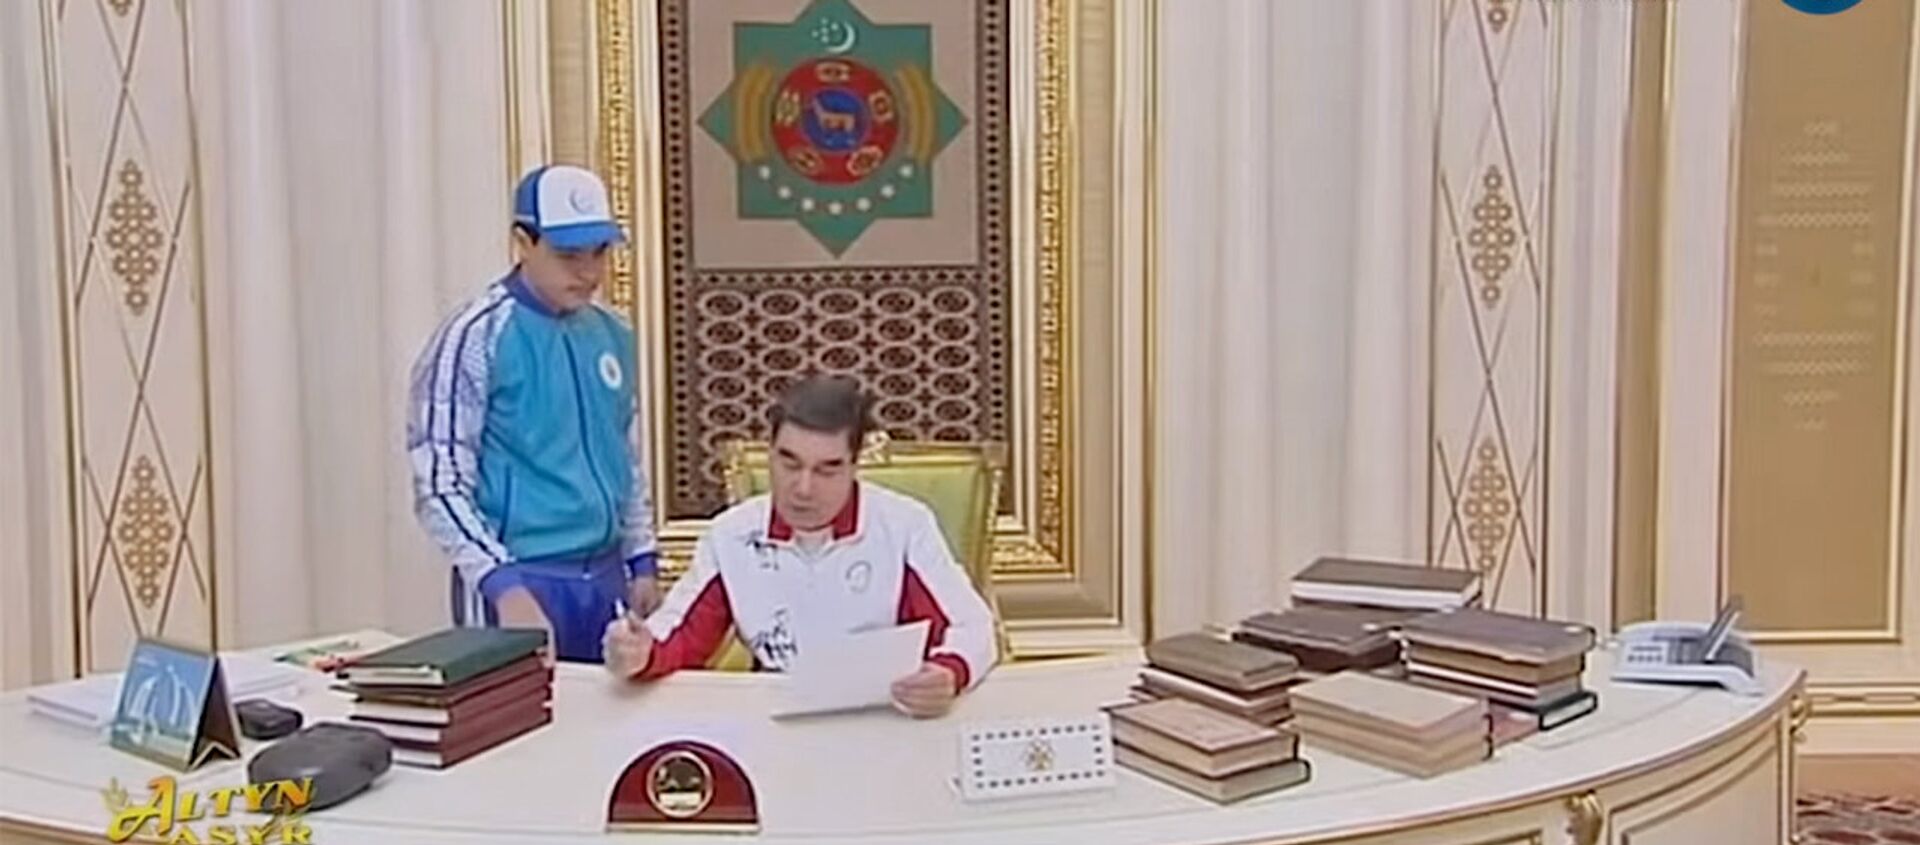 Президент Туркменитана вместе с внуком сочинили стихи - Sputnik Армения, 1920, 11.07.2018